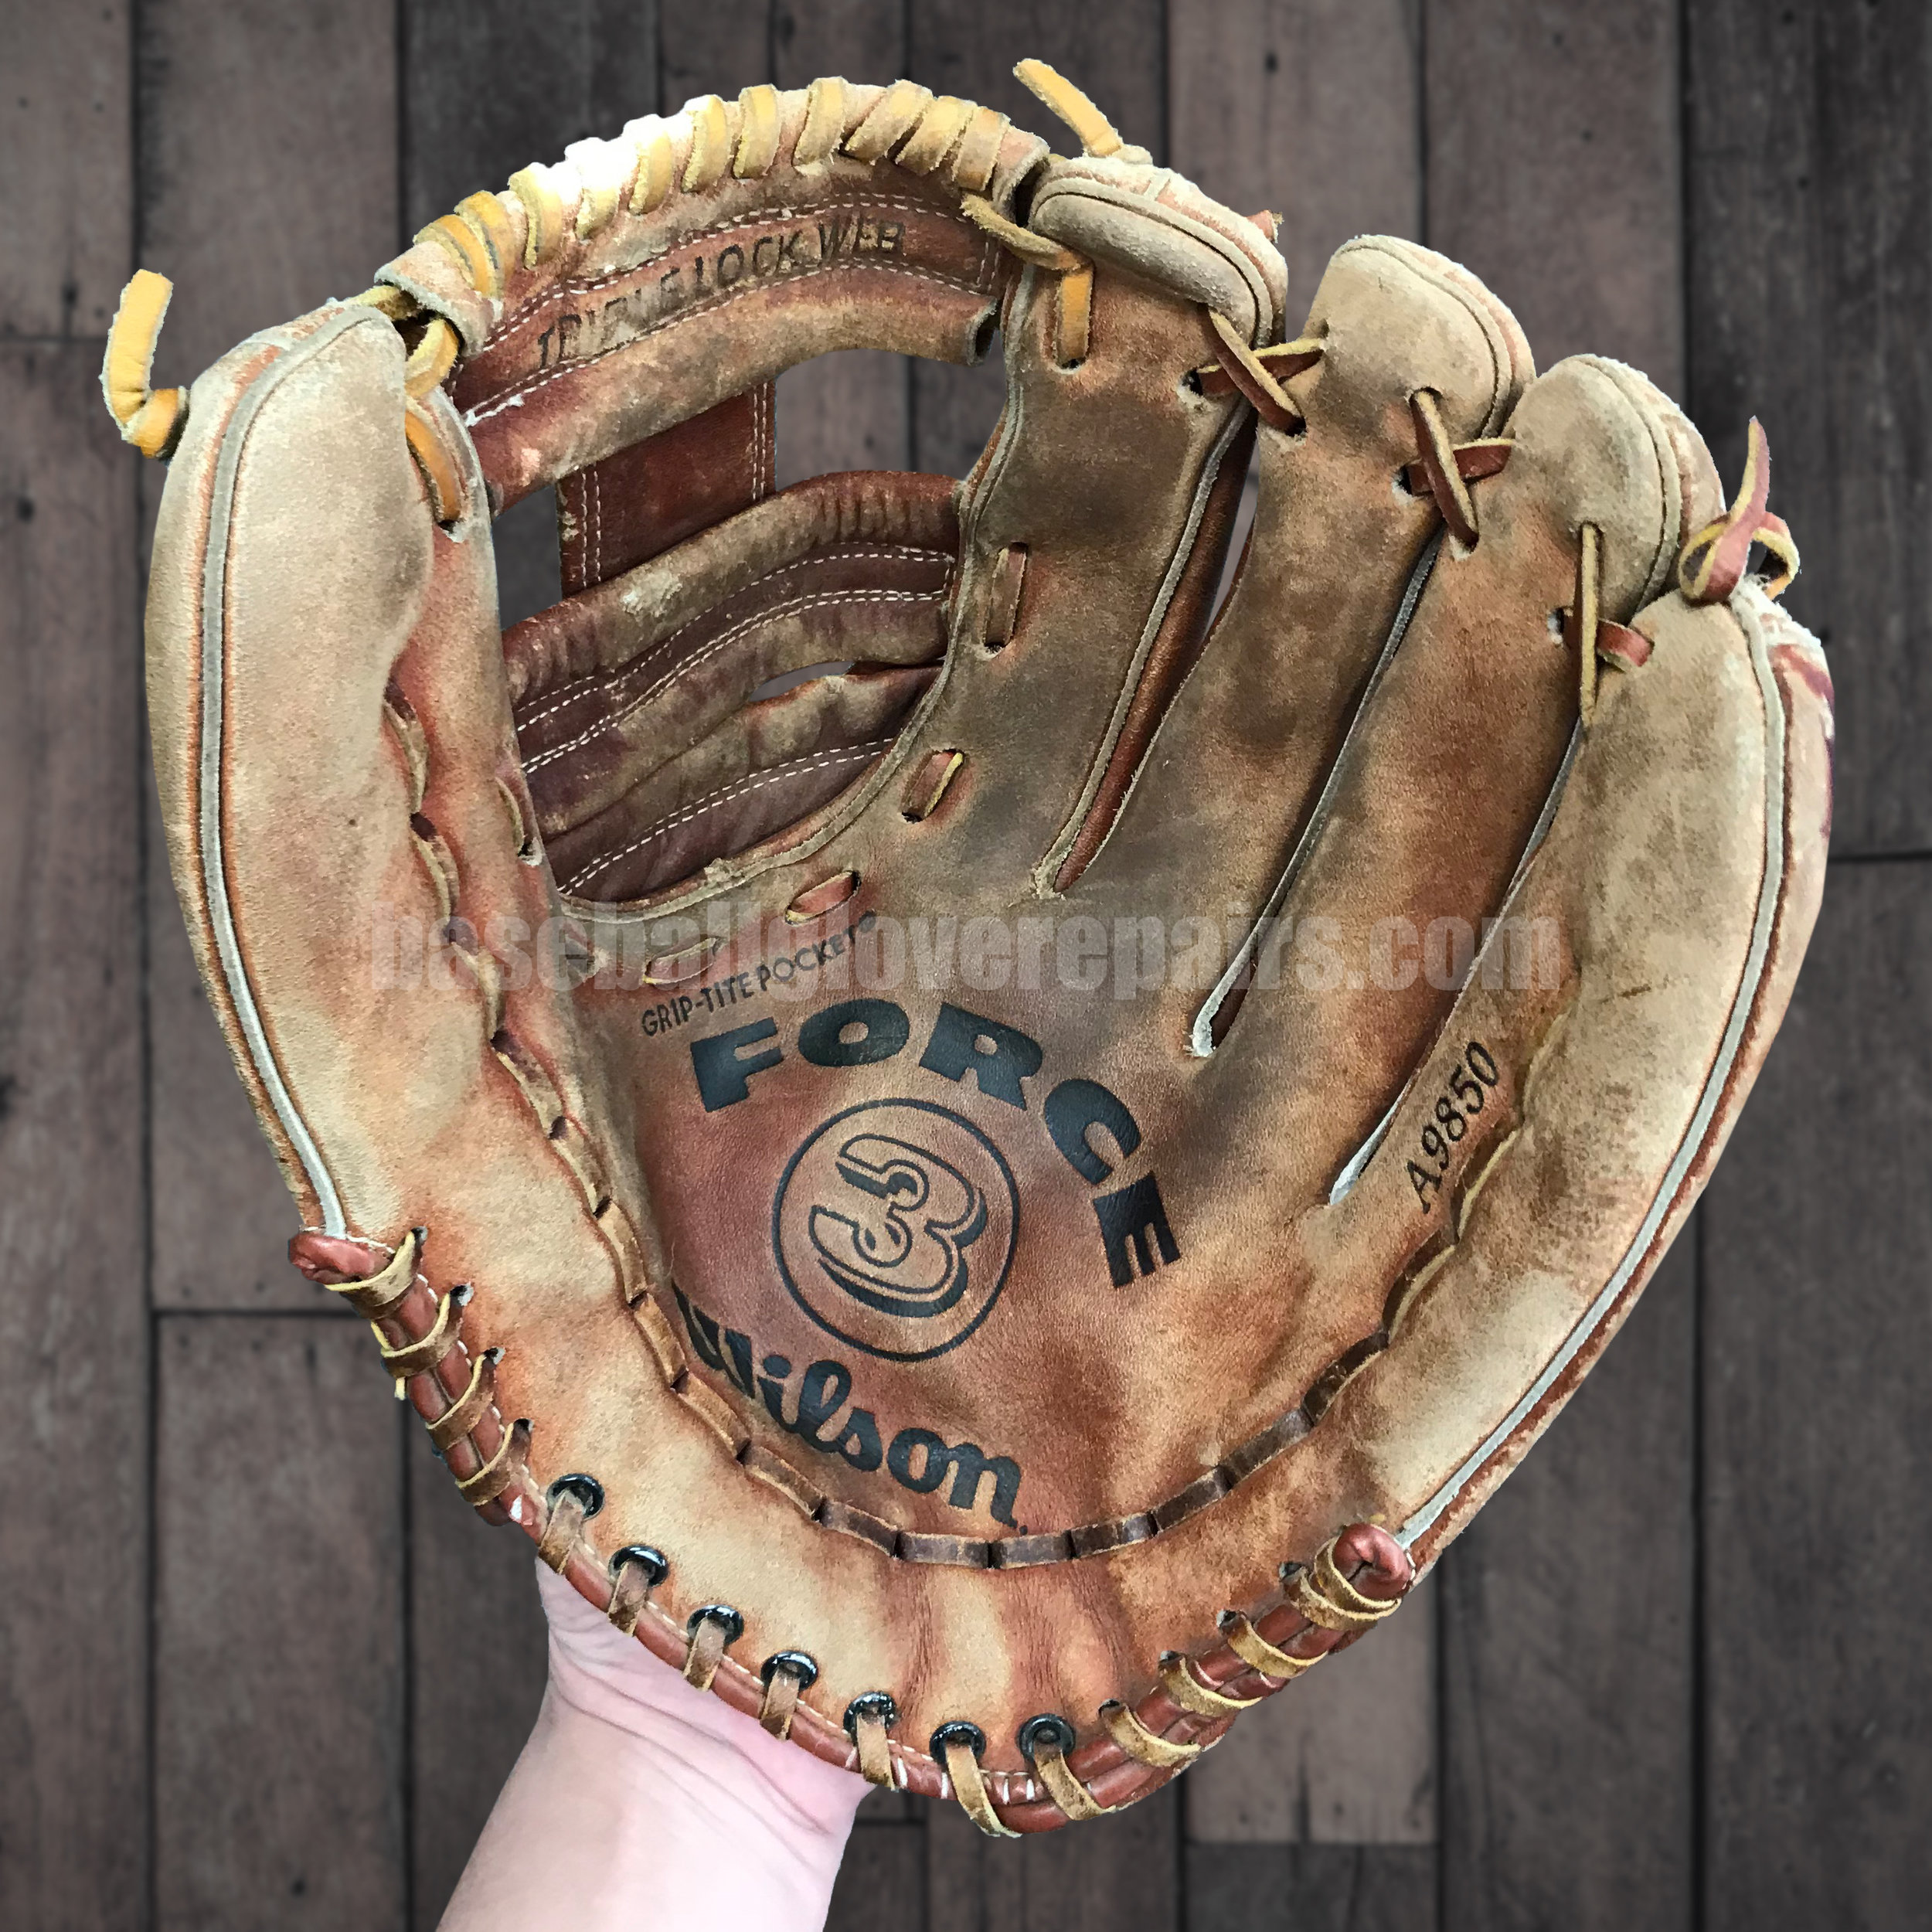 Baseball Glove Repairs